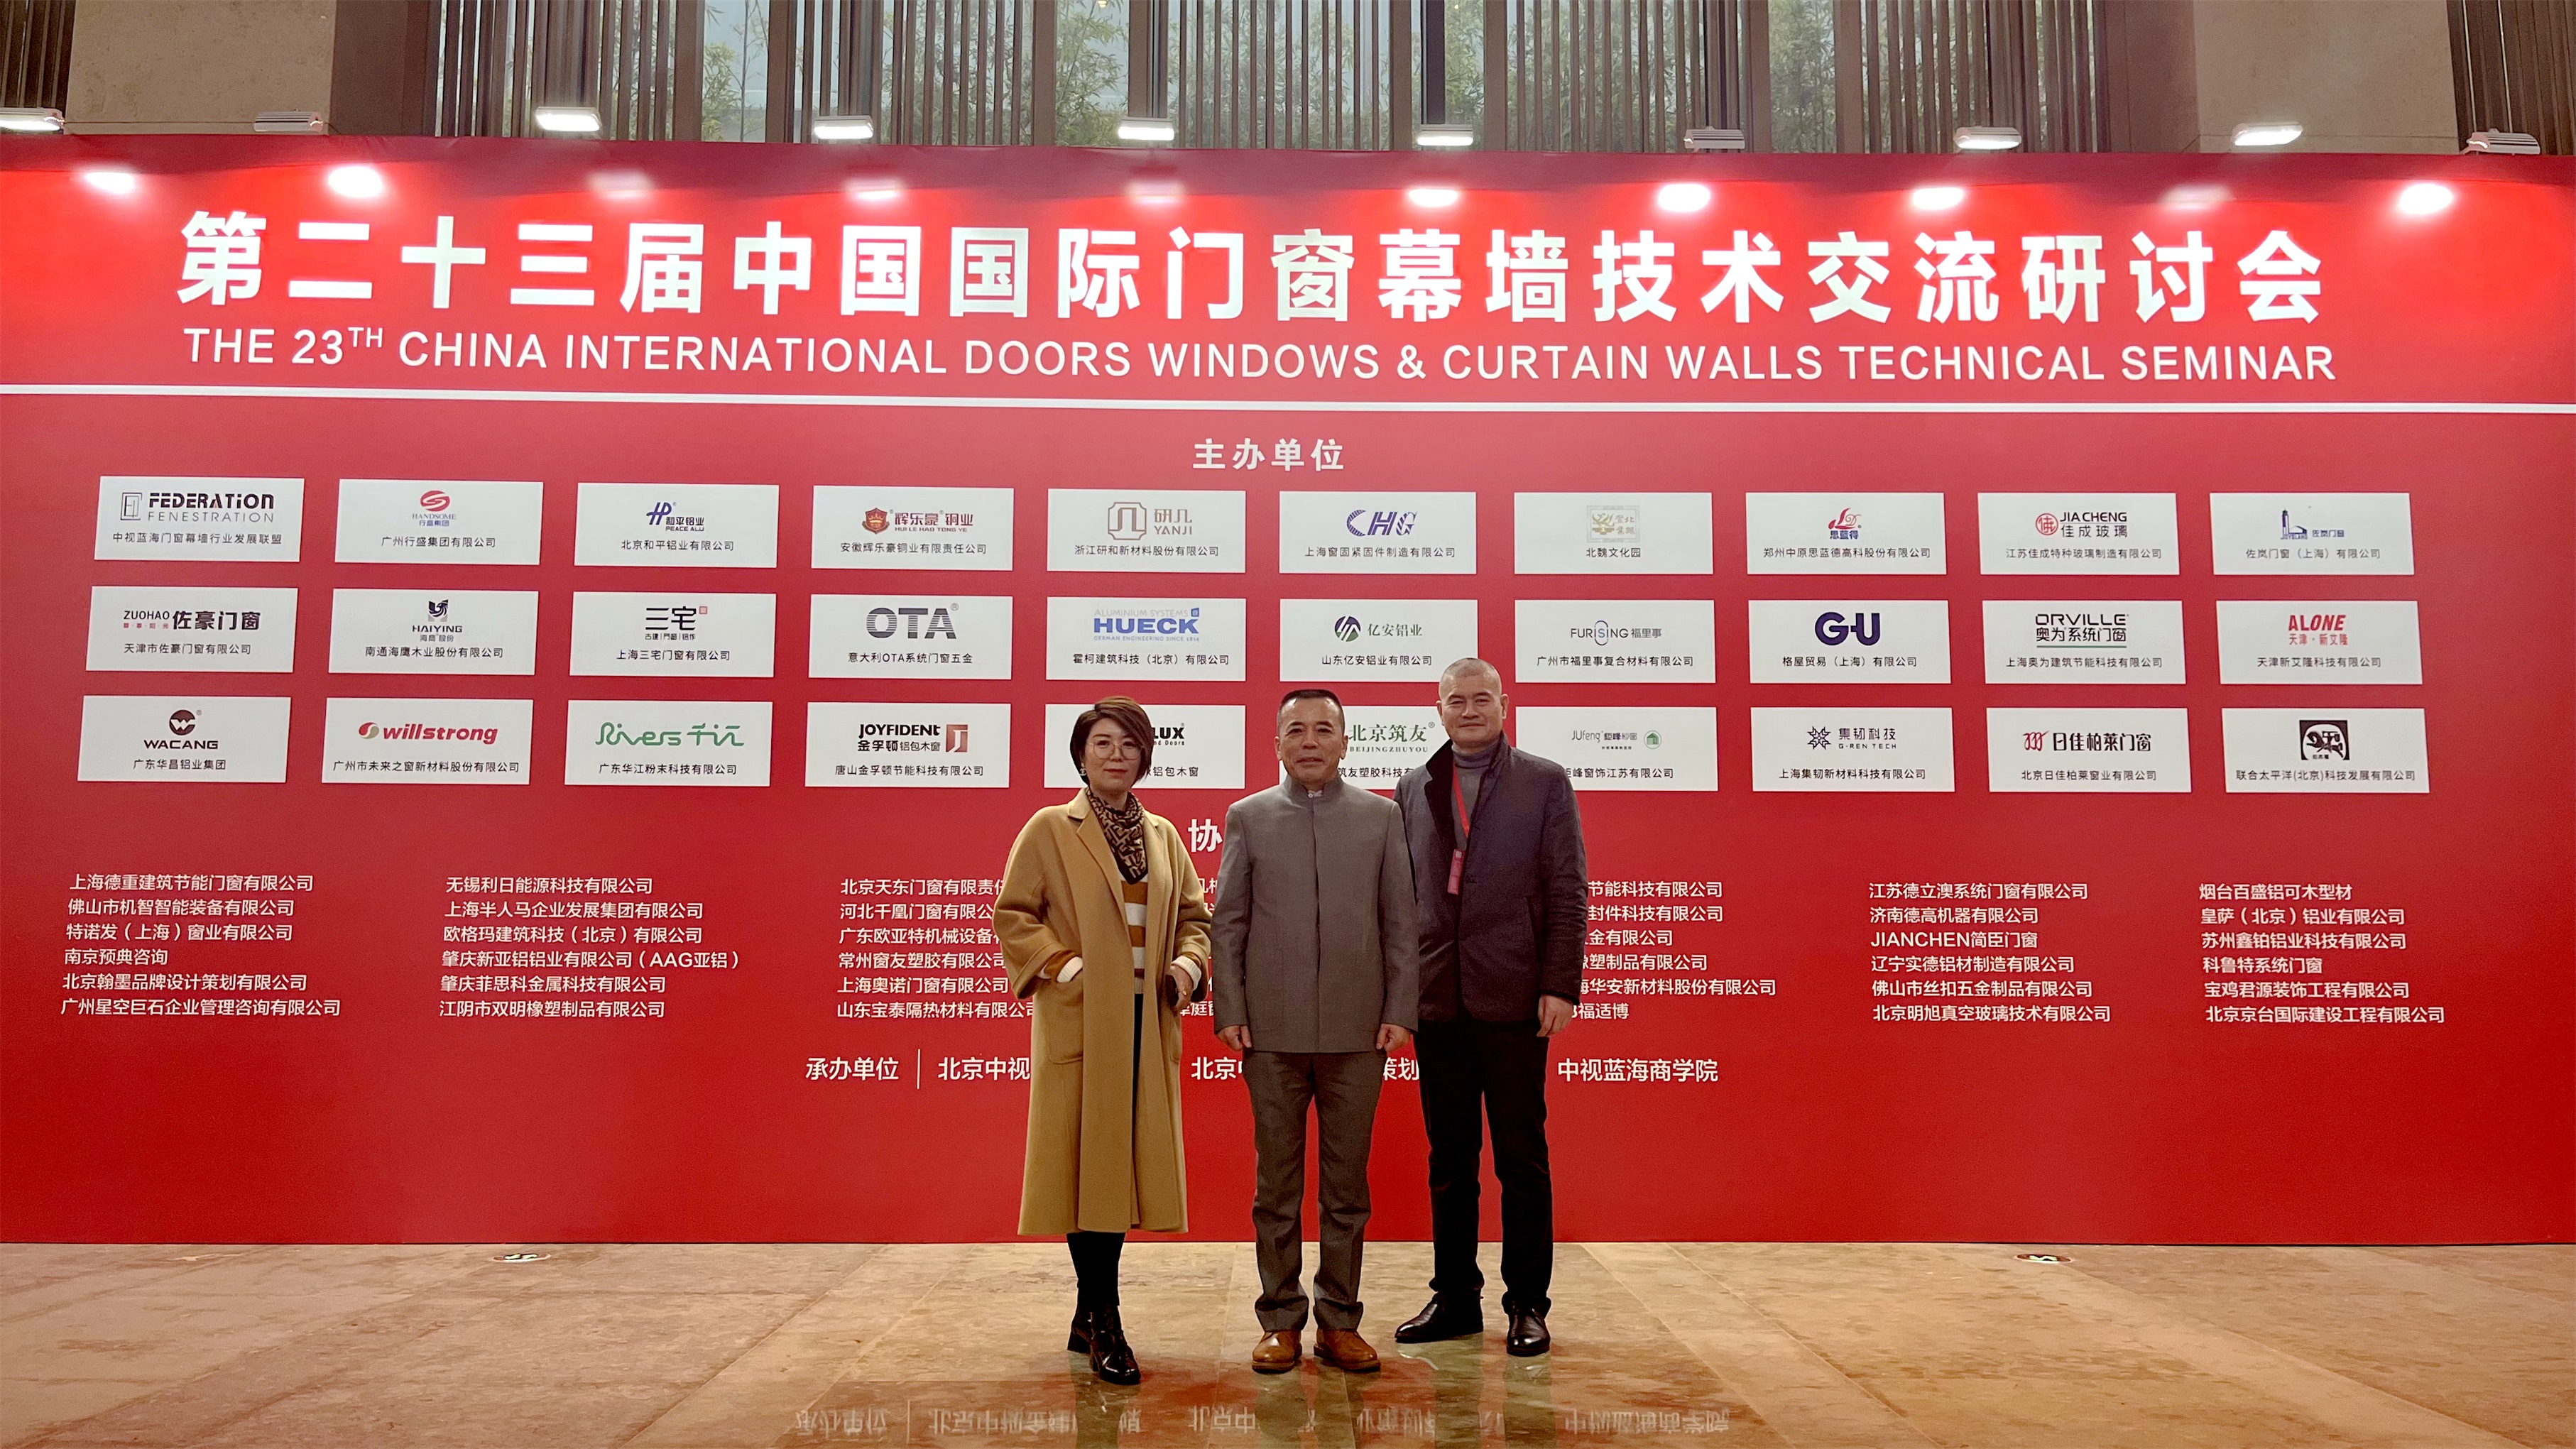 日佳柏莱：恭喜第23届中国国际门窗幕墙技术交流研讨会圆满收官